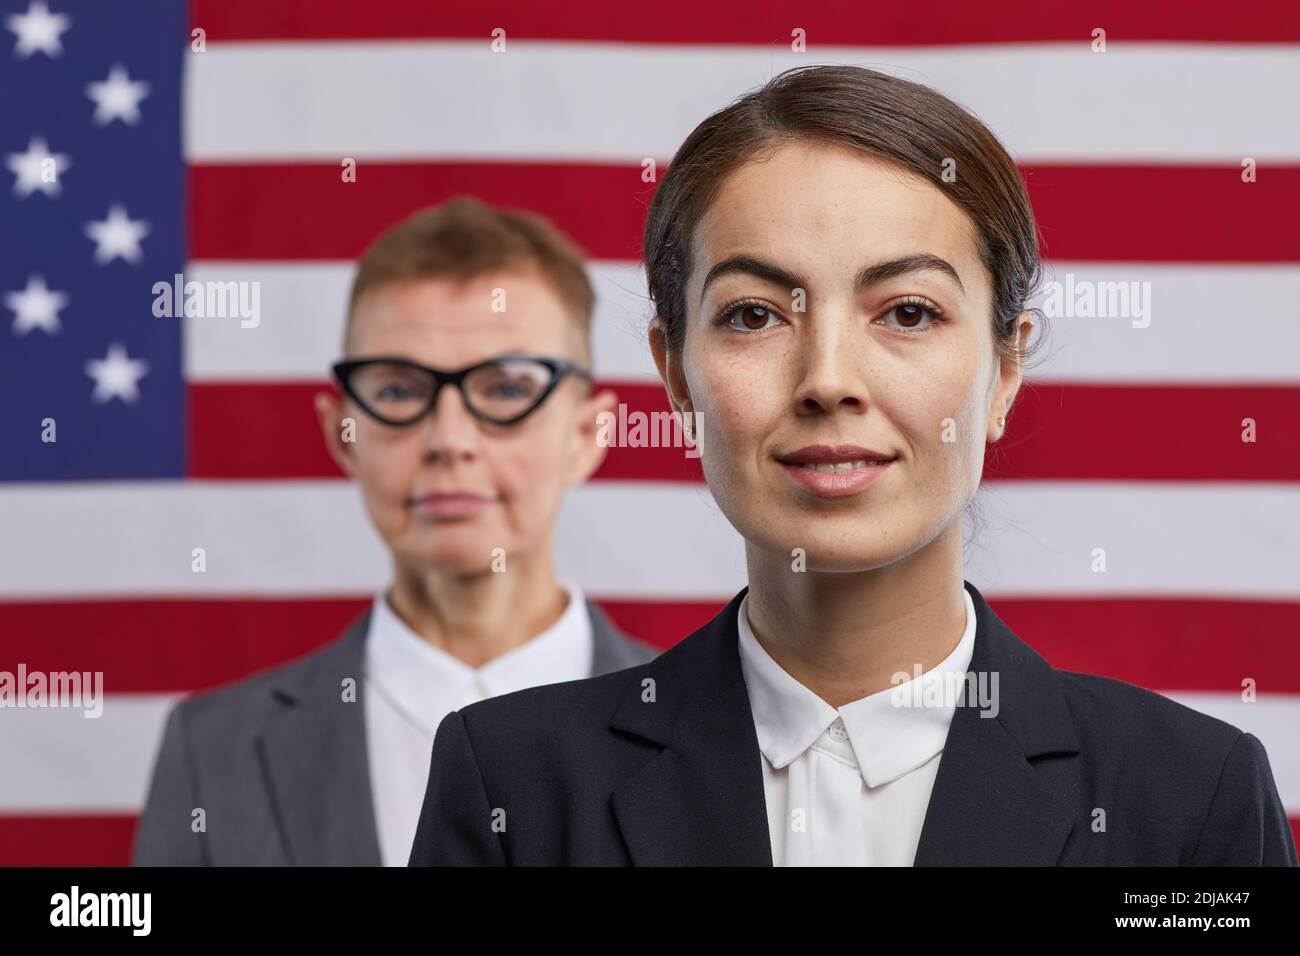 Primo piano ritratto di giovane donna politico guardando la macchina fotografica e sorridendo mentre si sta in piedi contro lo sfondo della bandiera degli Stati Uniti, copia spazio Foto Stock